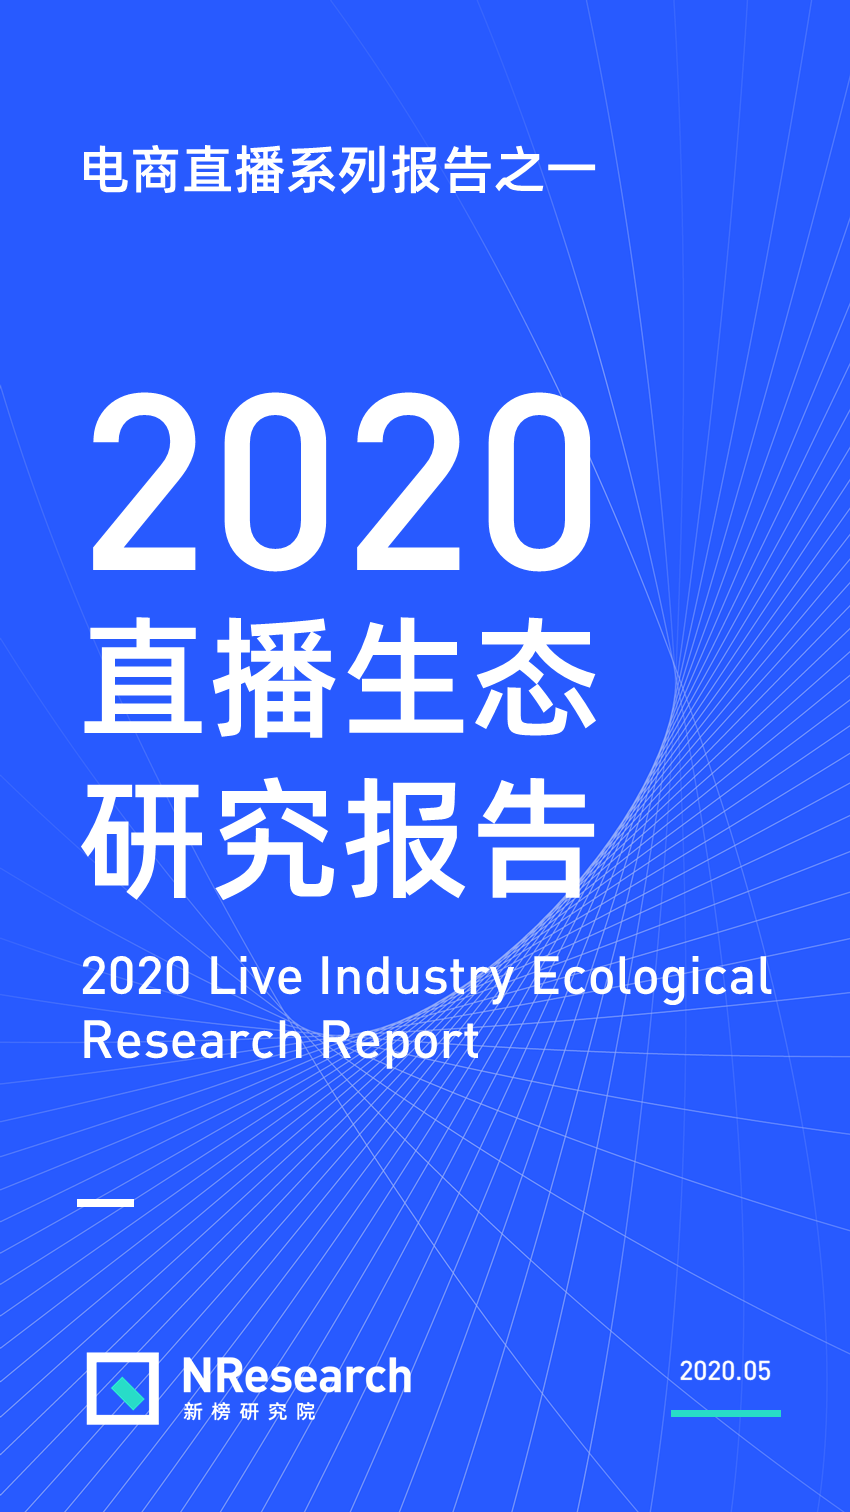 《2020直播生态研究报告》来了！新一战即将打响